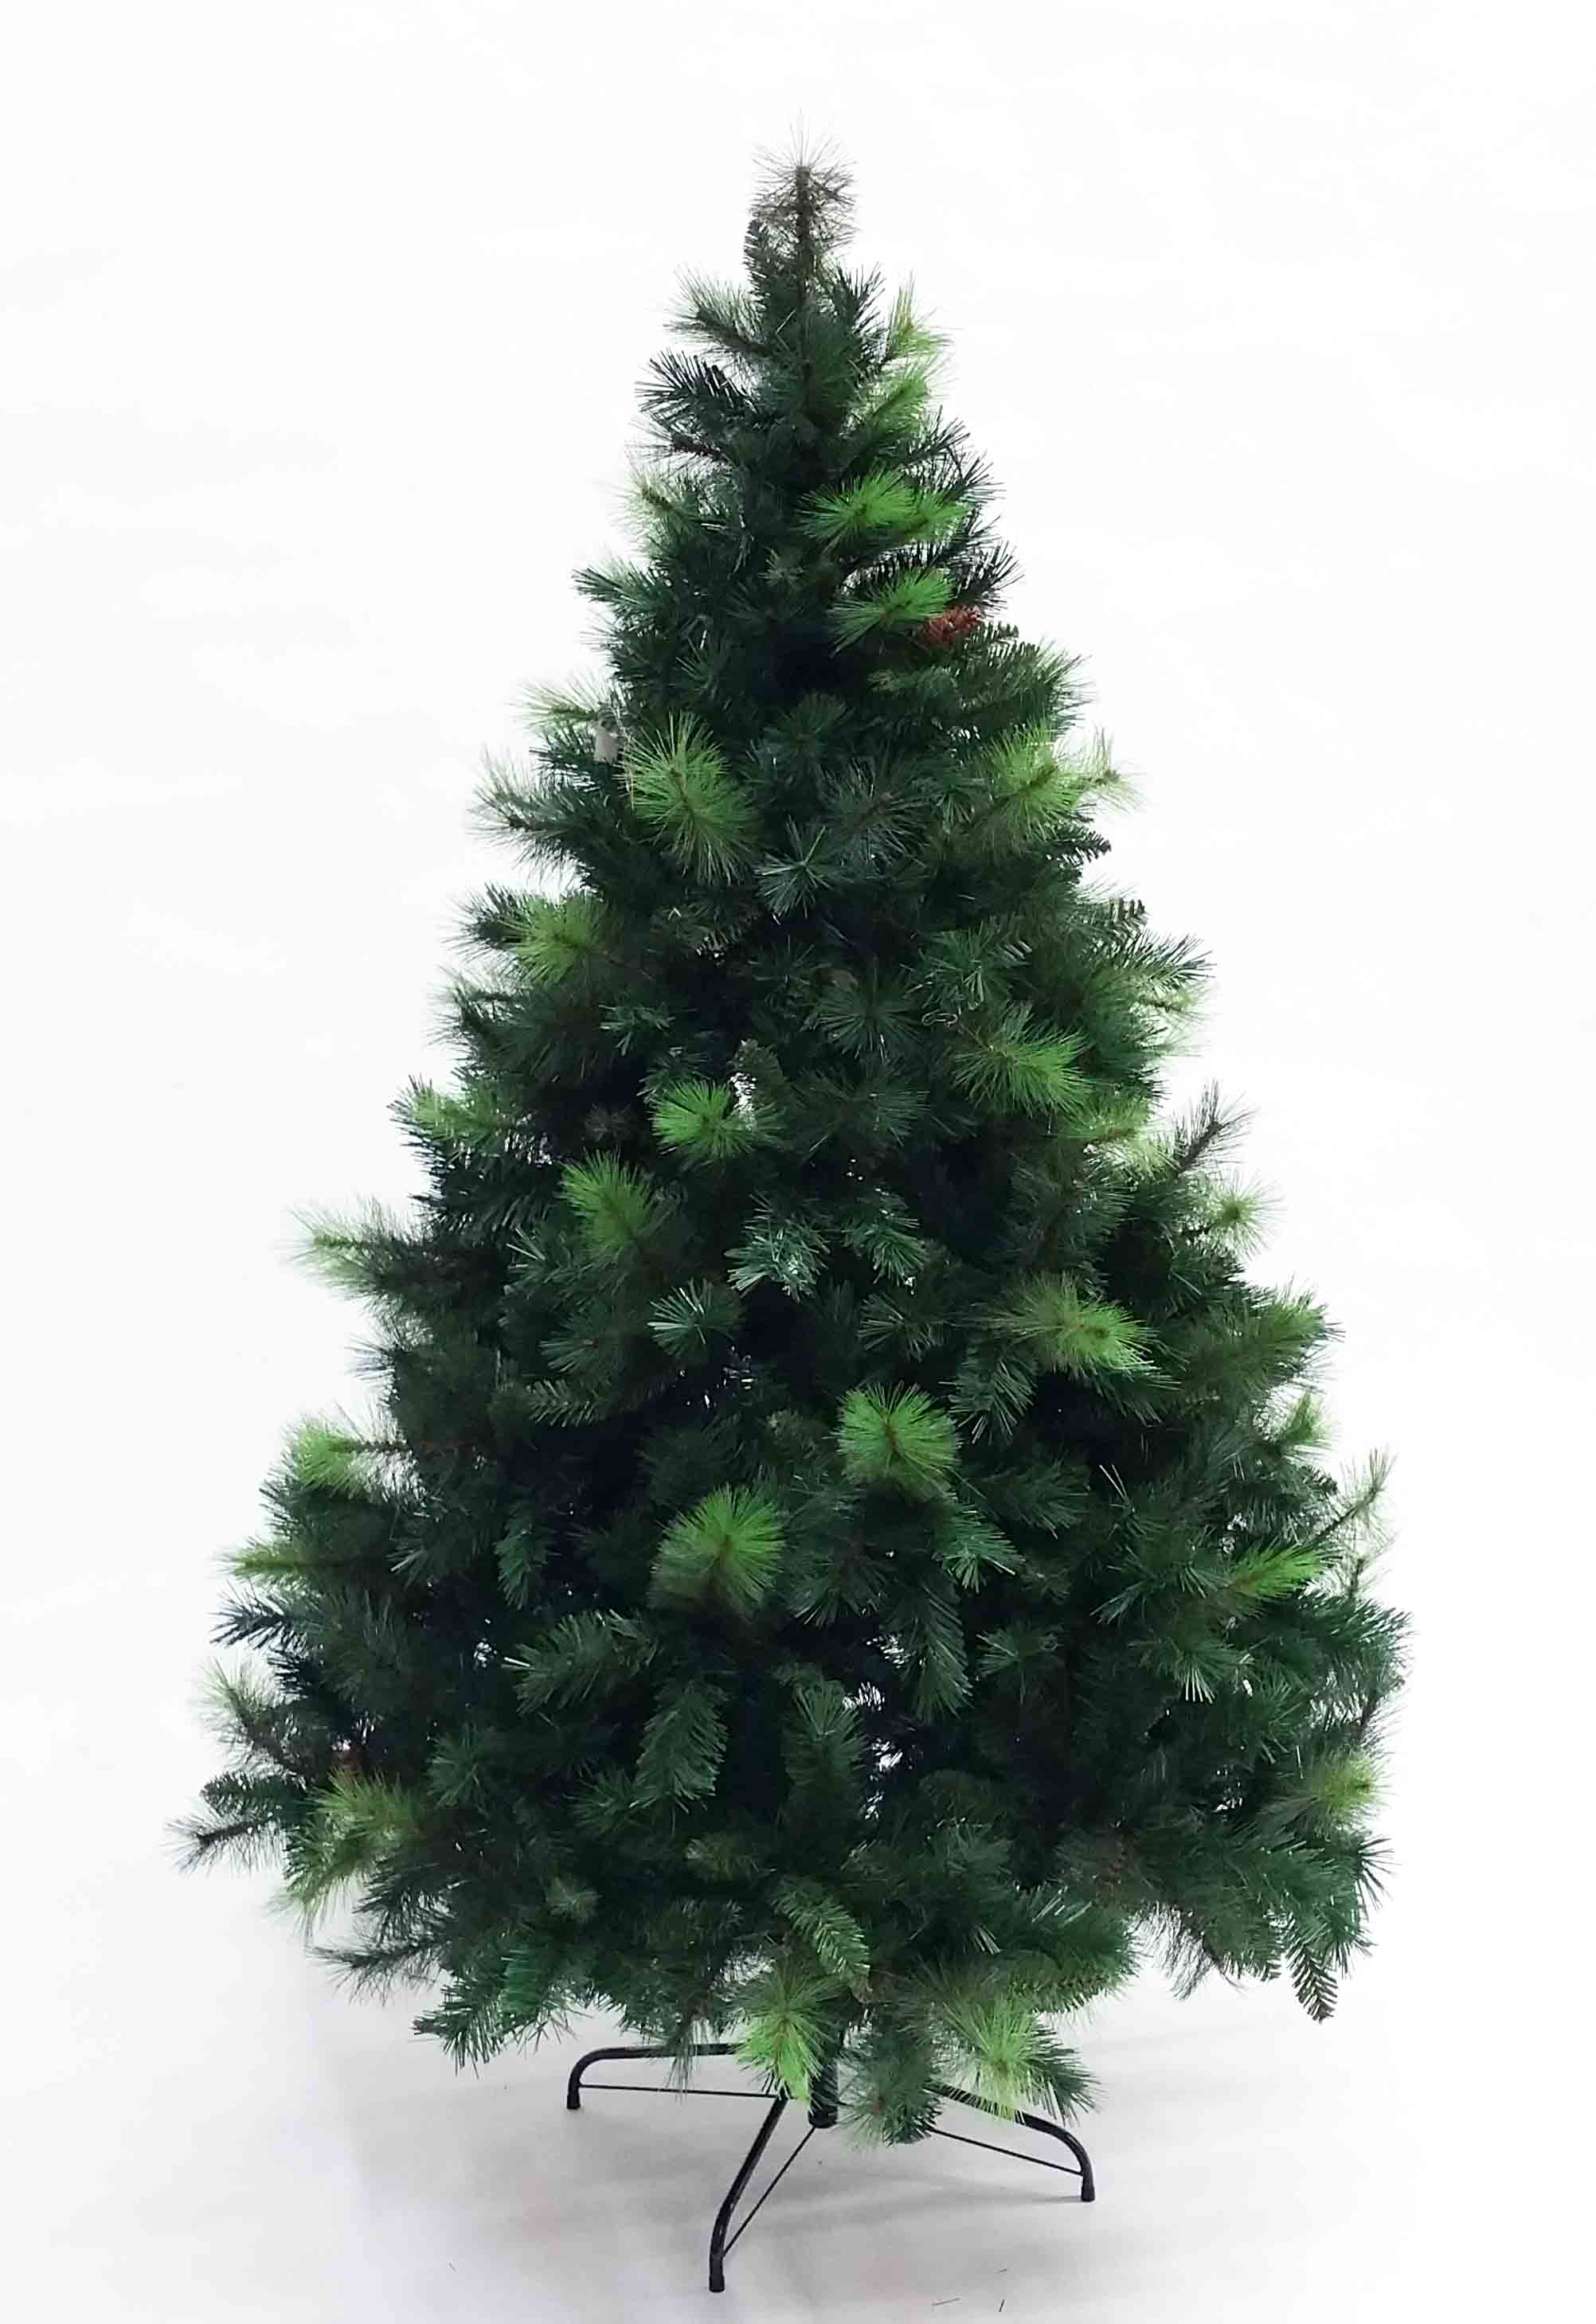 XT65C - 6.5' Pine Tree with Cones - 195.80 ea